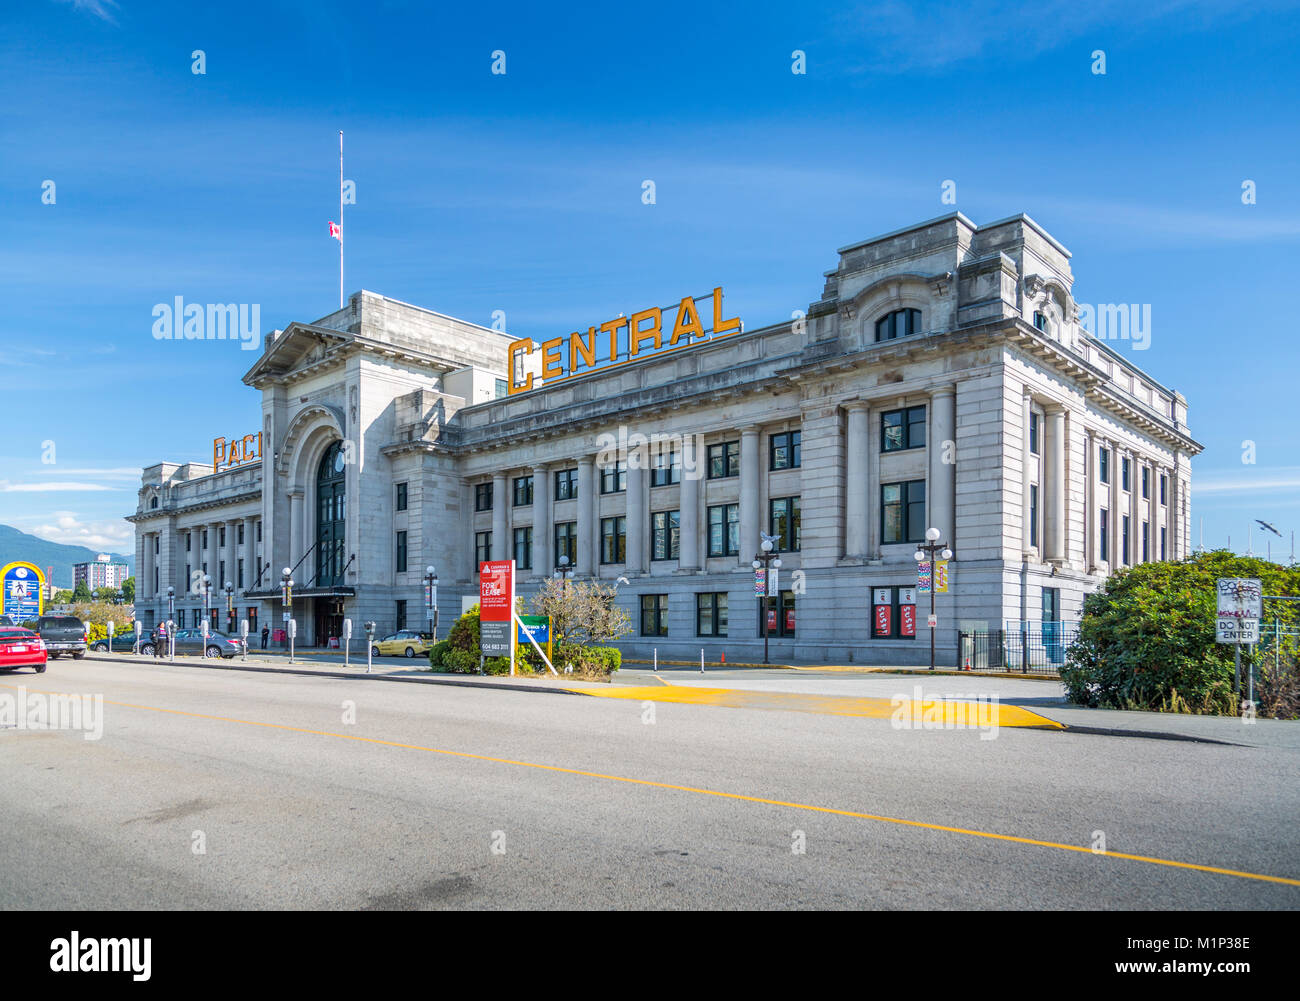 Vue de la Gare centrale du Pacifique, Vancouver, British Columbia, Canada, Amérique du Nord Banque D'Images